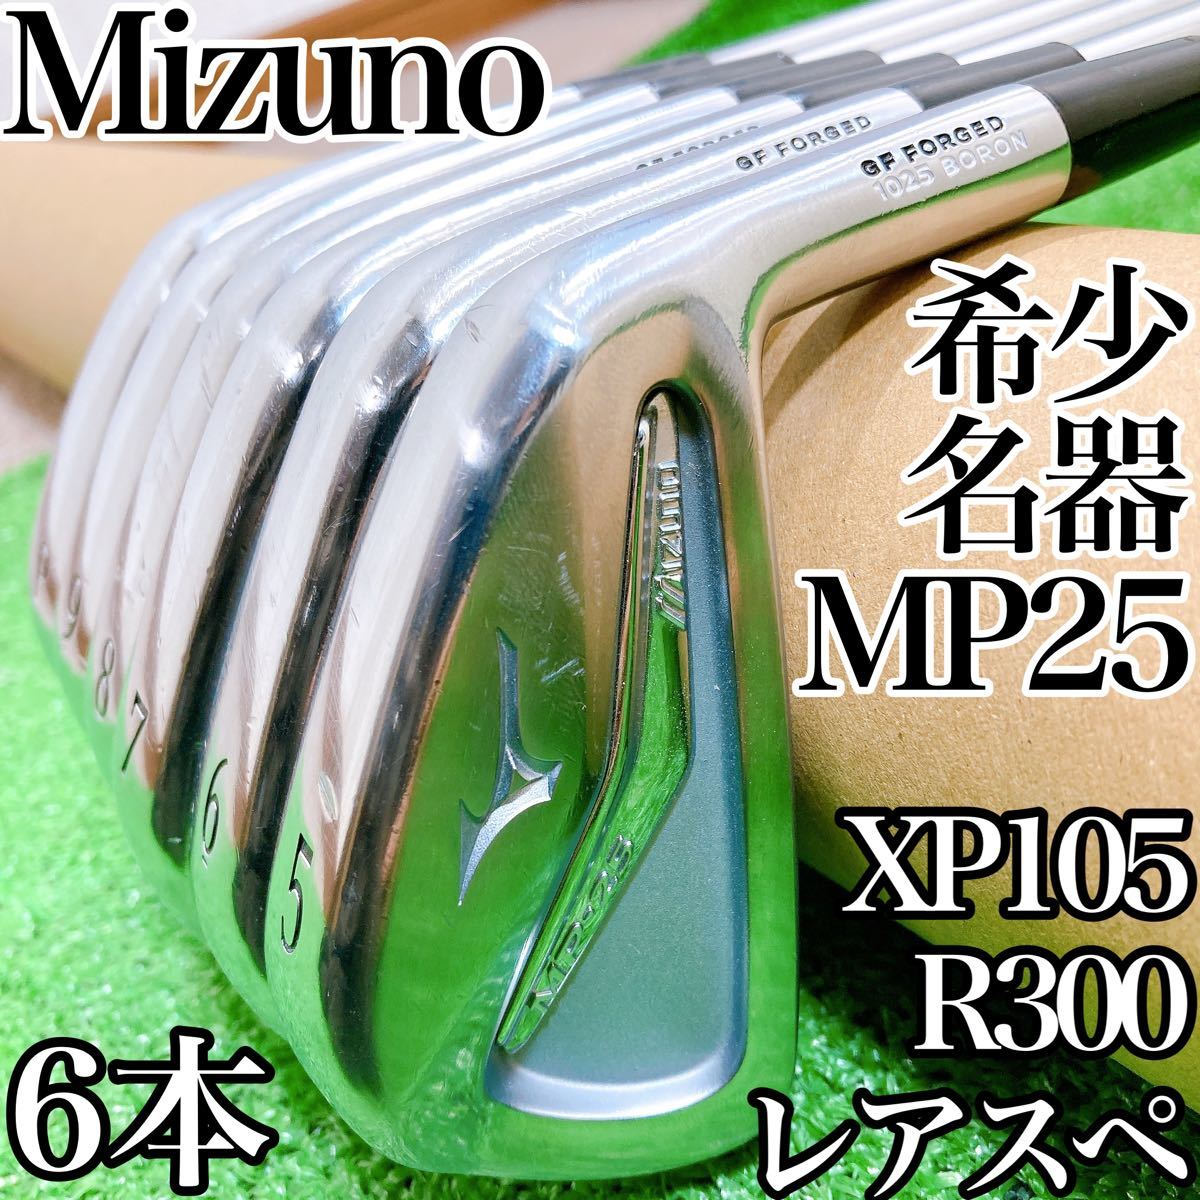 希少名器★ミズノ MP-25 アイアン6本セット XP105 R300 MP25 Mizuno 5-9,P 男性用 日本製 メンズ